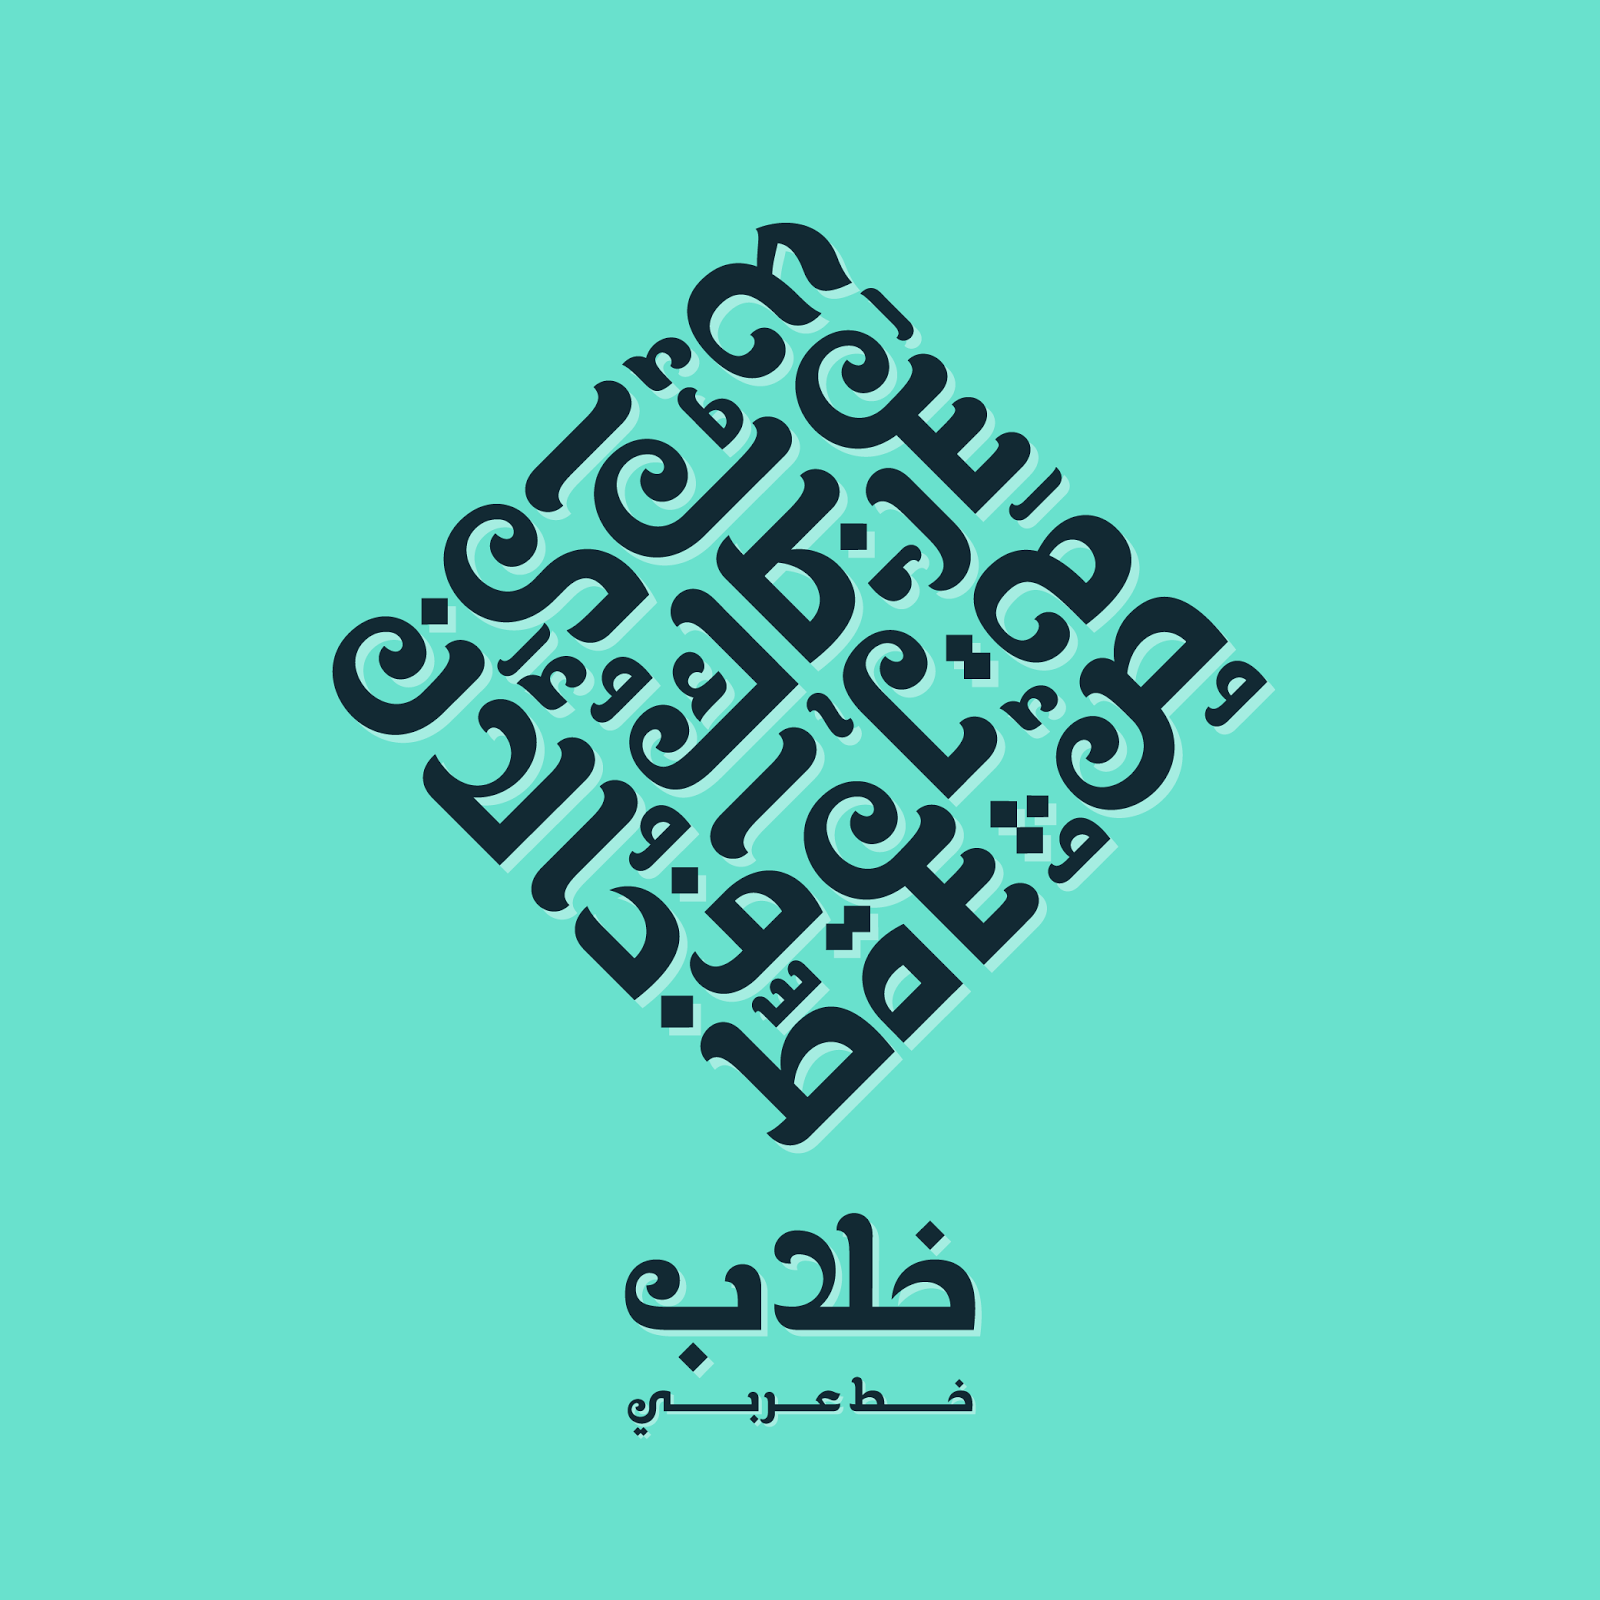 خلاب خط عربي جديد مبدعي الفوتوشوب